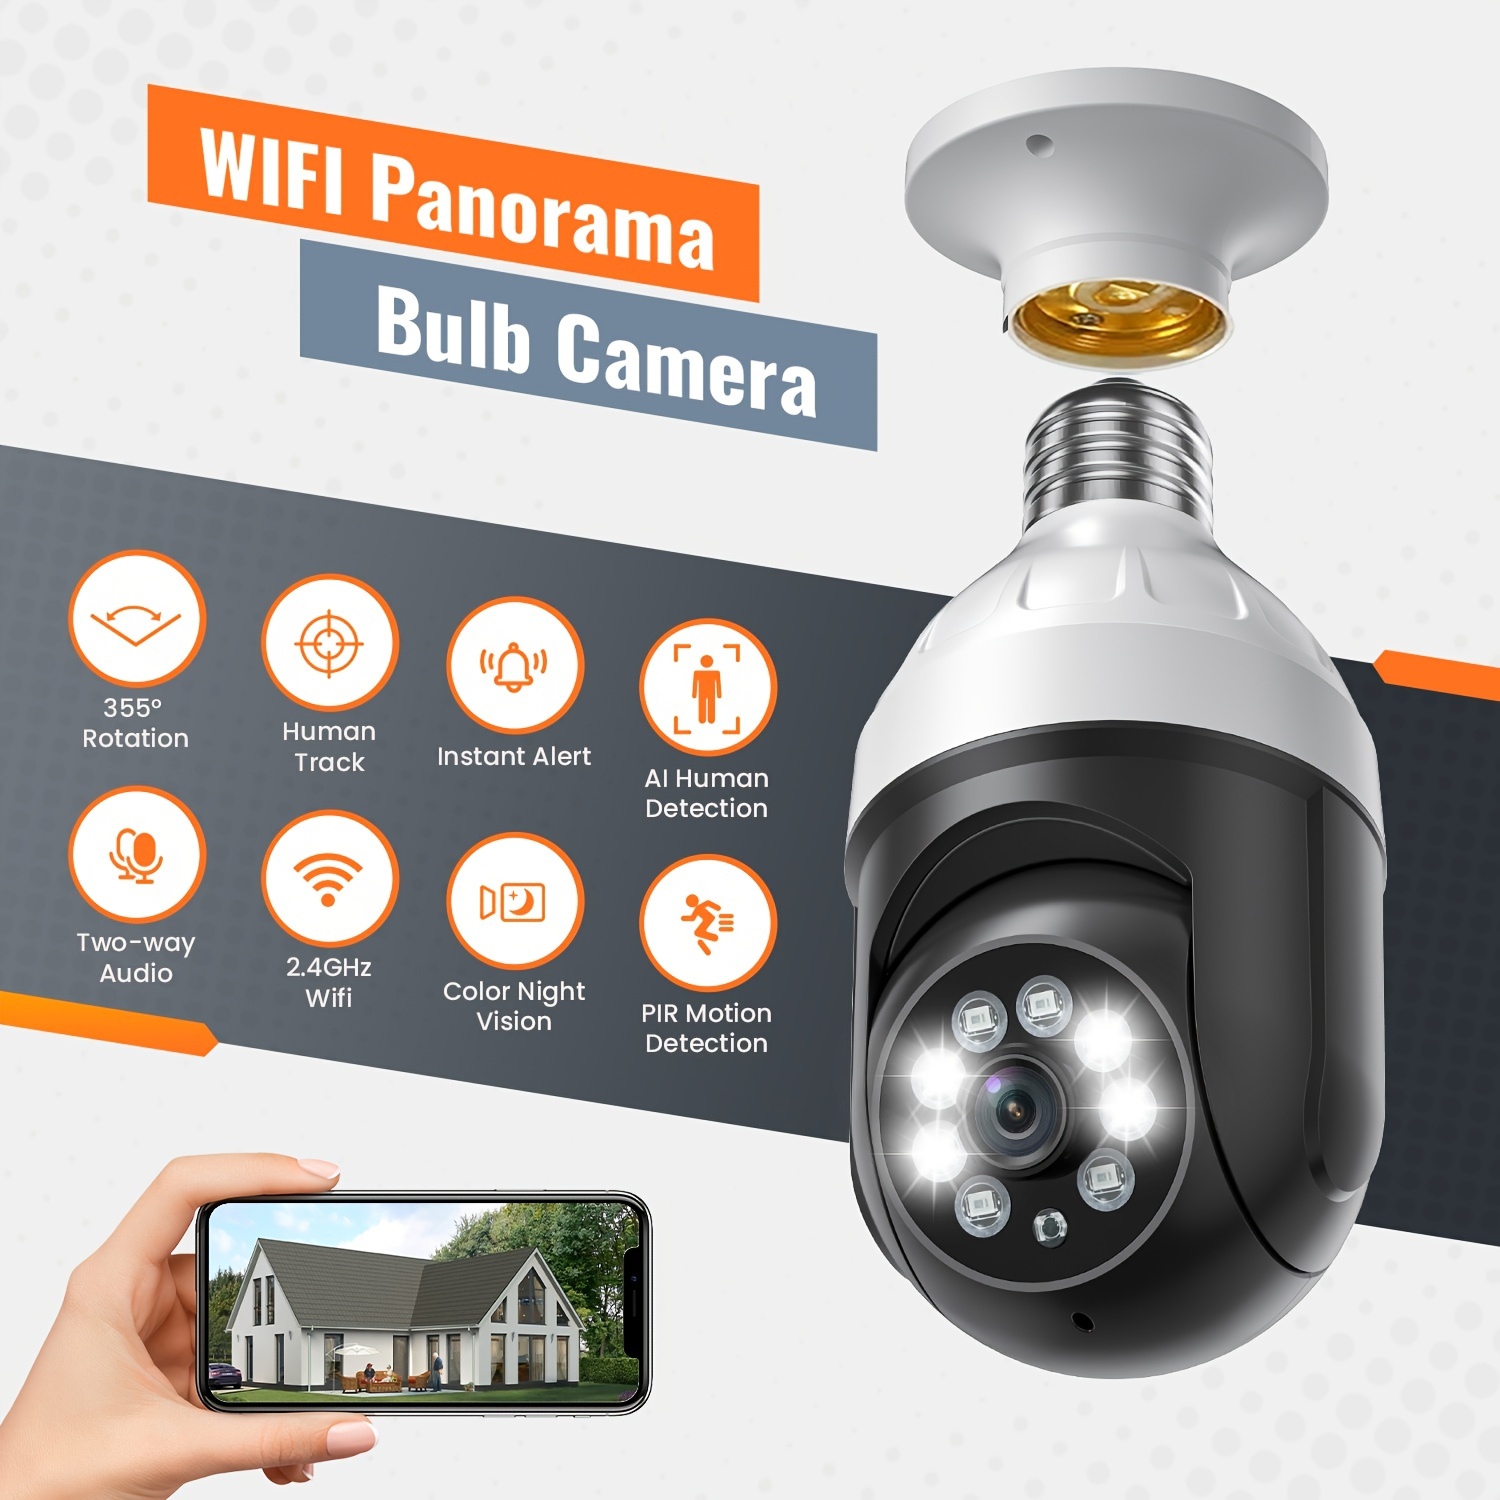 Caméra de surveillance interieur / exterieur WiFi 360 degrés extérieure,  2,4 GHz et 5 GHz WiFi ampoule caméra, caméra de sécurité sans fil WiFi  1080P avec détection de mouvement humain jour et nuit au